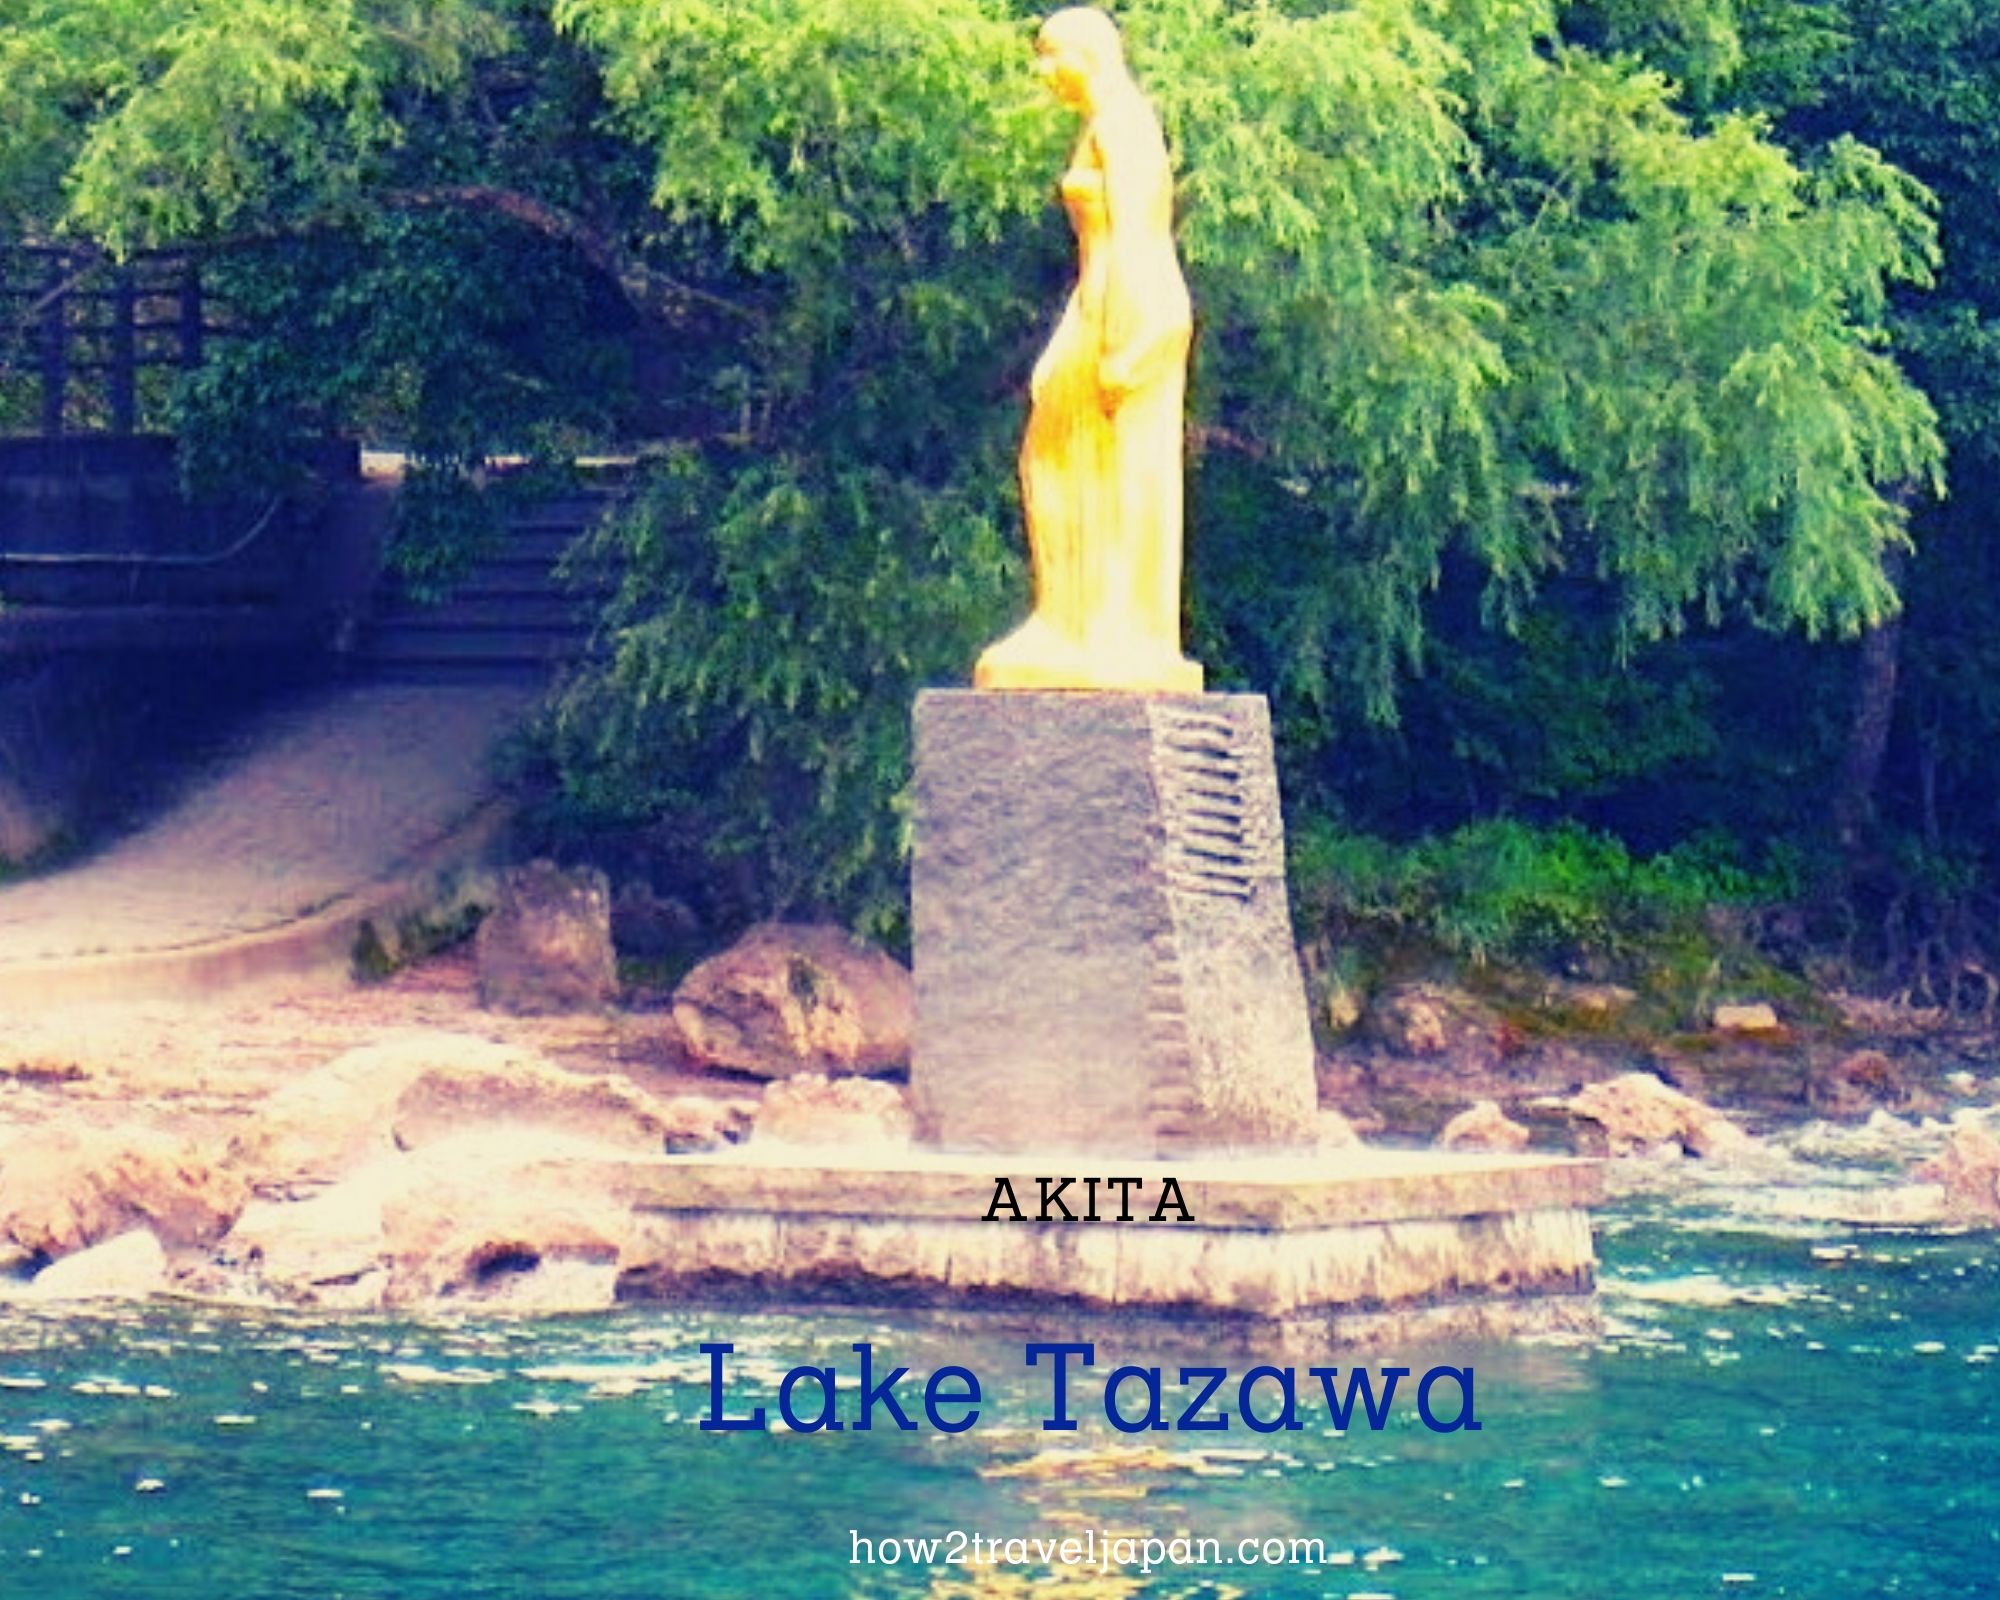 You are currently viewing Lake Tazawa in Akita